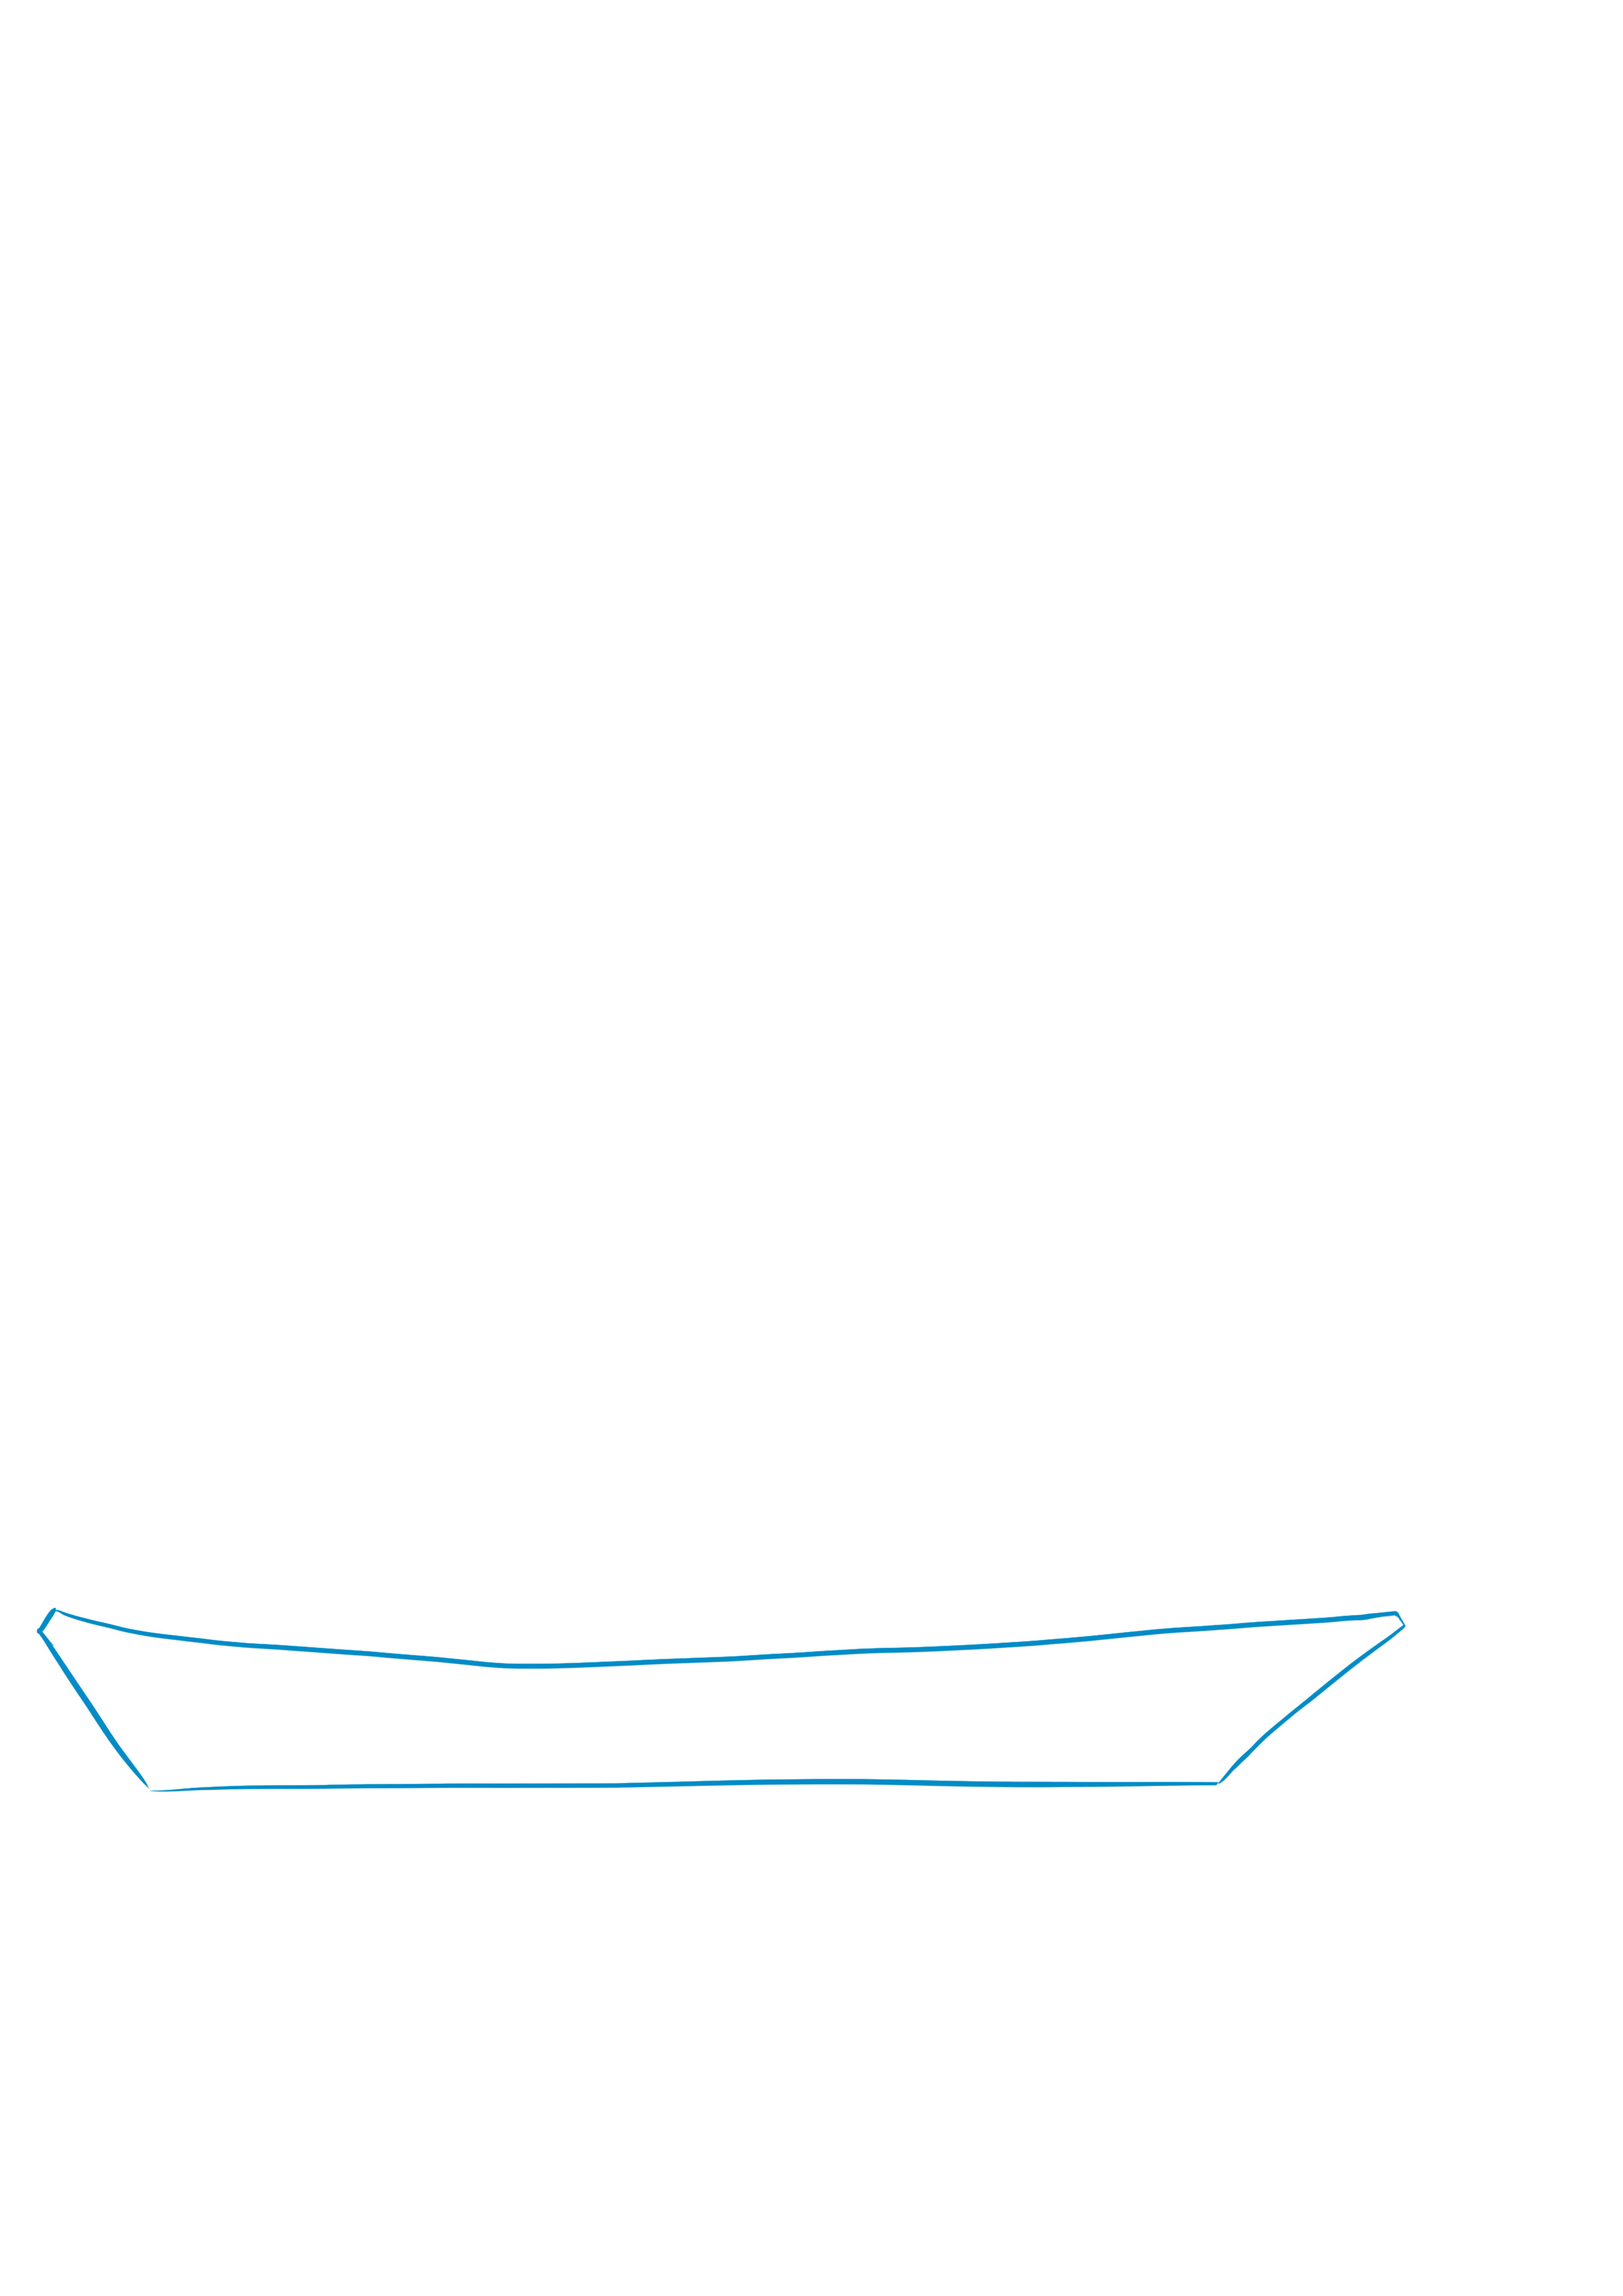 dessiner le croquis de la coque du bateau